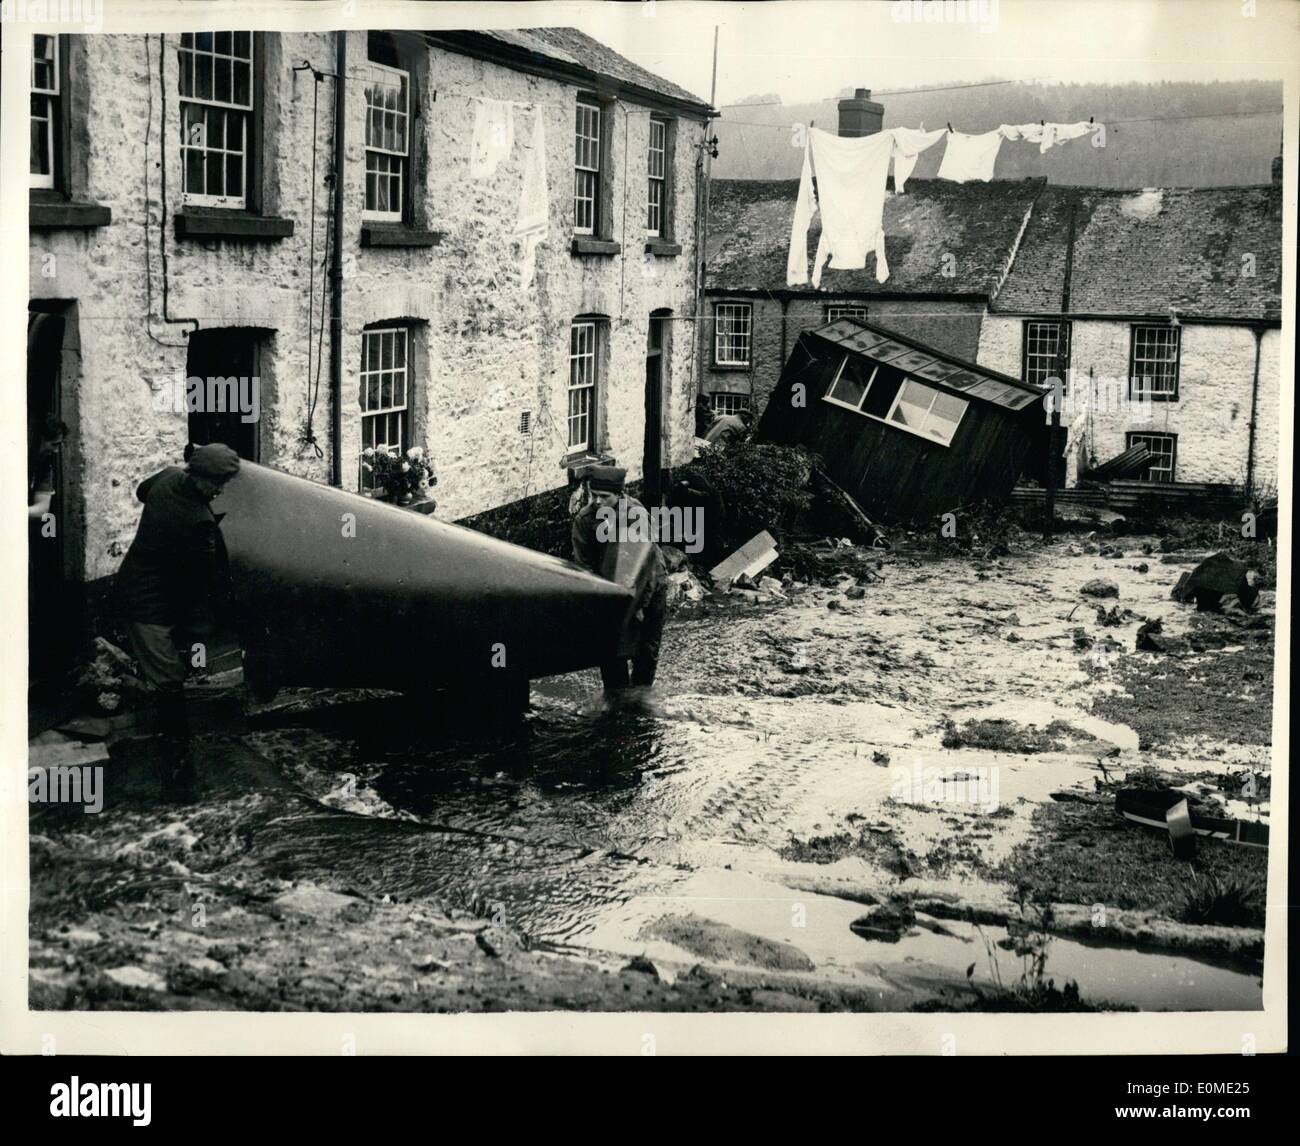 Novembre 11, 1954 - C'est le chemin de la 19m de haut qui éclatent d'inondation sur le village pittoresque de Gunni étancher, Cornwall, quelque 50 personnes ont été évacuées de leurs maisons, quand une trombe d'eau a causé l'inondation. Il y a des rues en pente et le danger vient aussi de mines d'étain obsolètes..plusieurs chalets avait l'eau jusqu'à leurs fenêtres des chambres. Banque D'Images